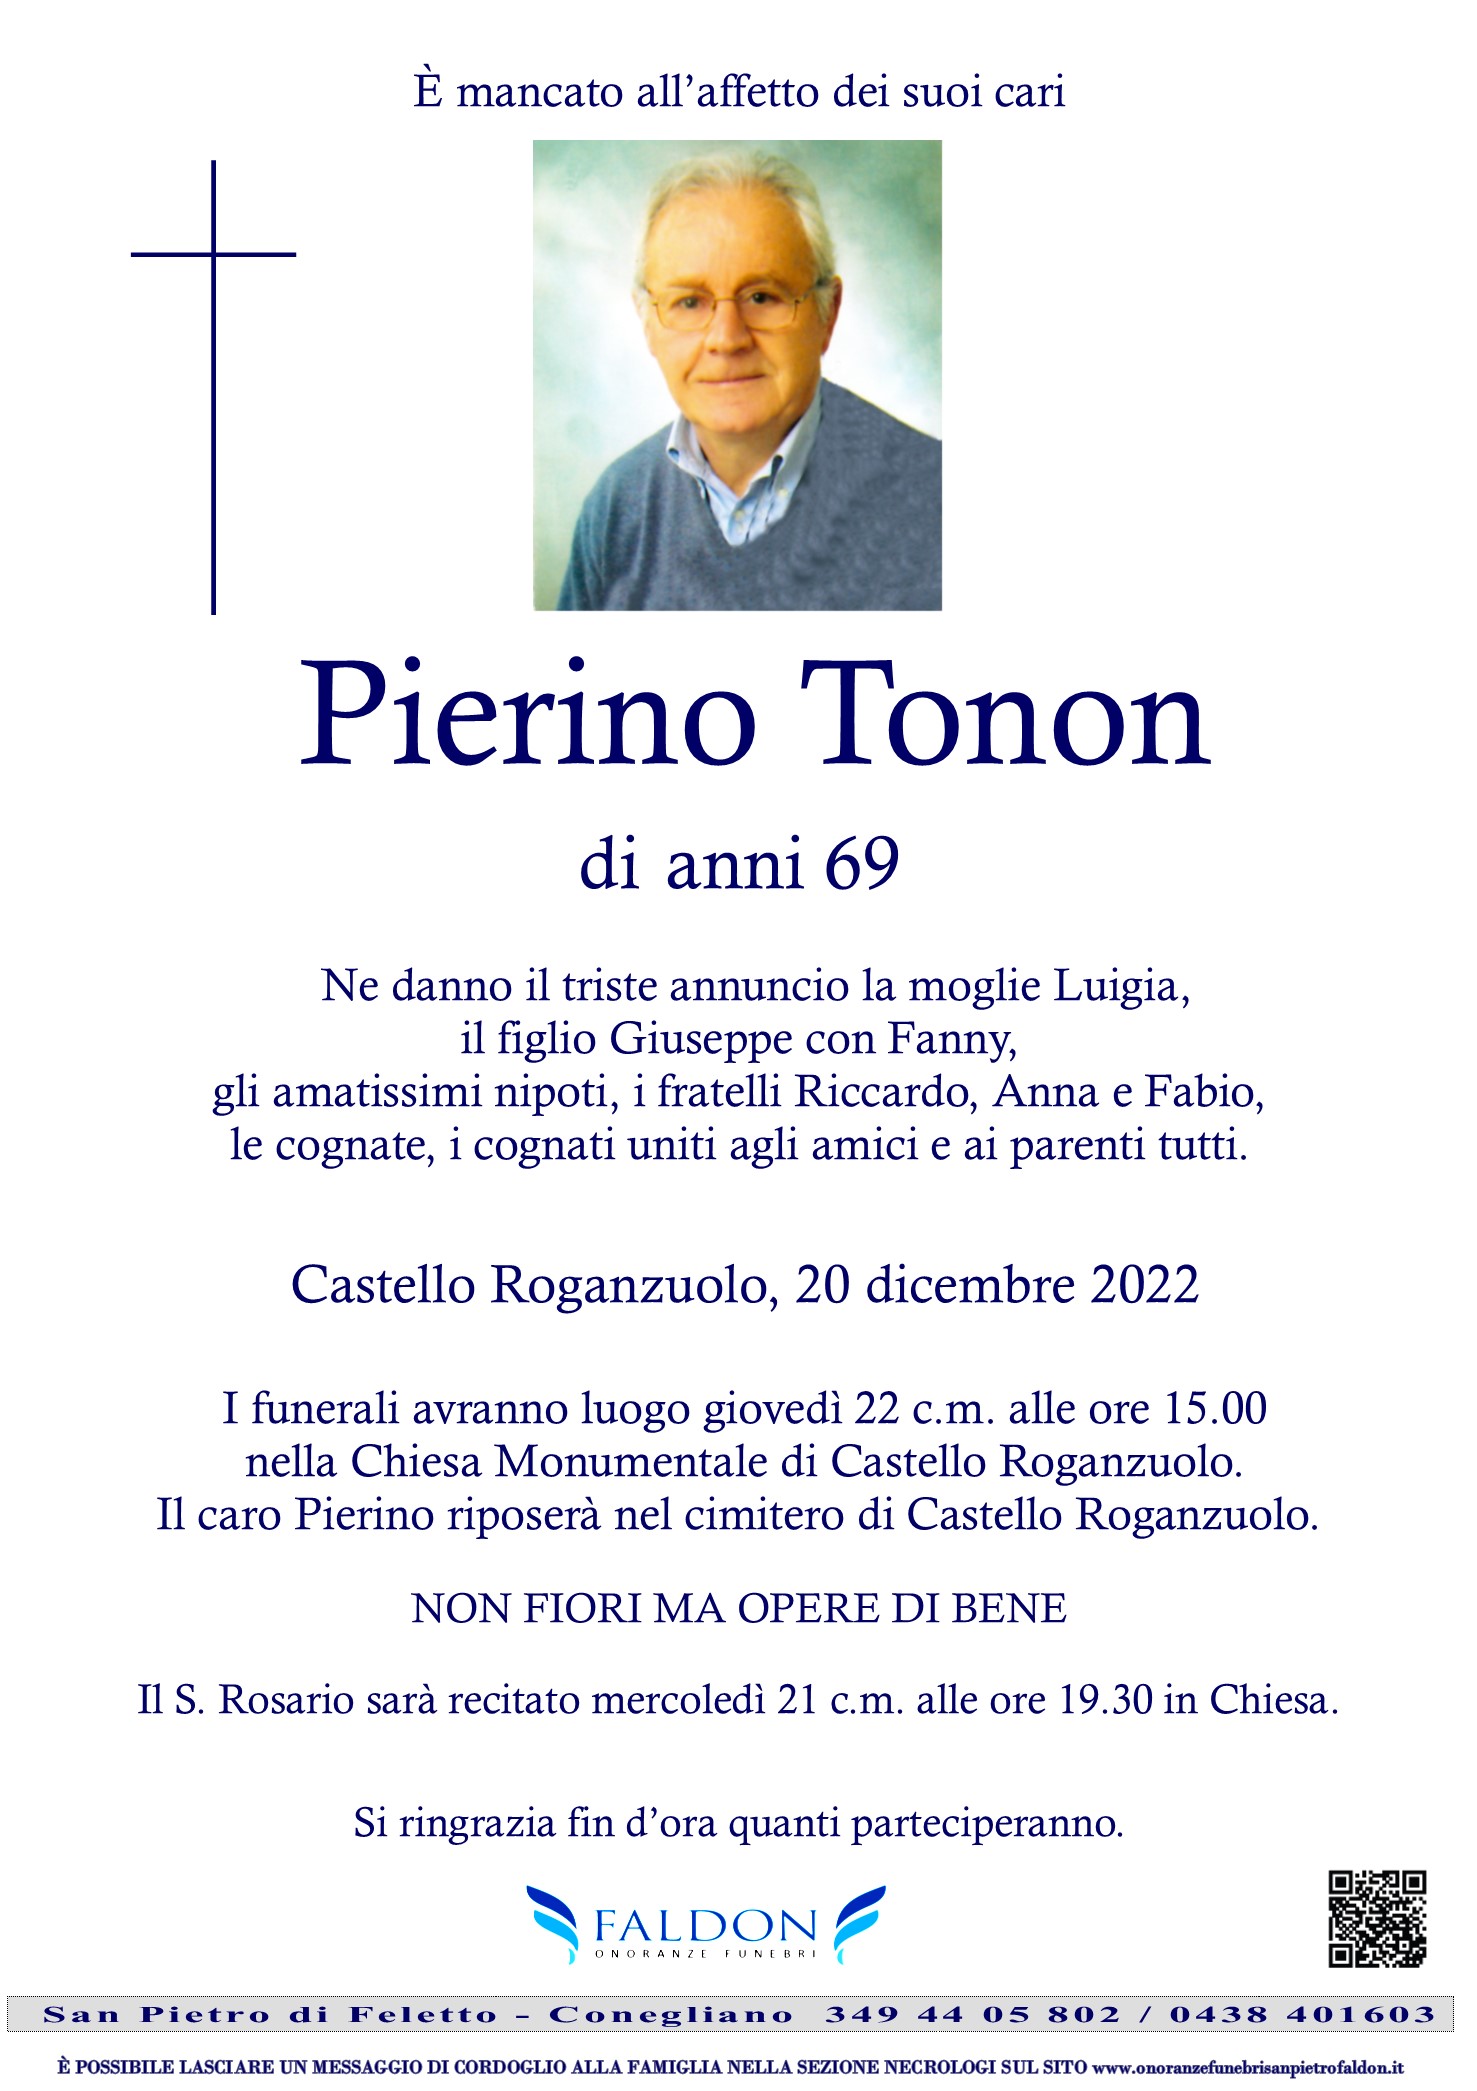 Pierino Tonon